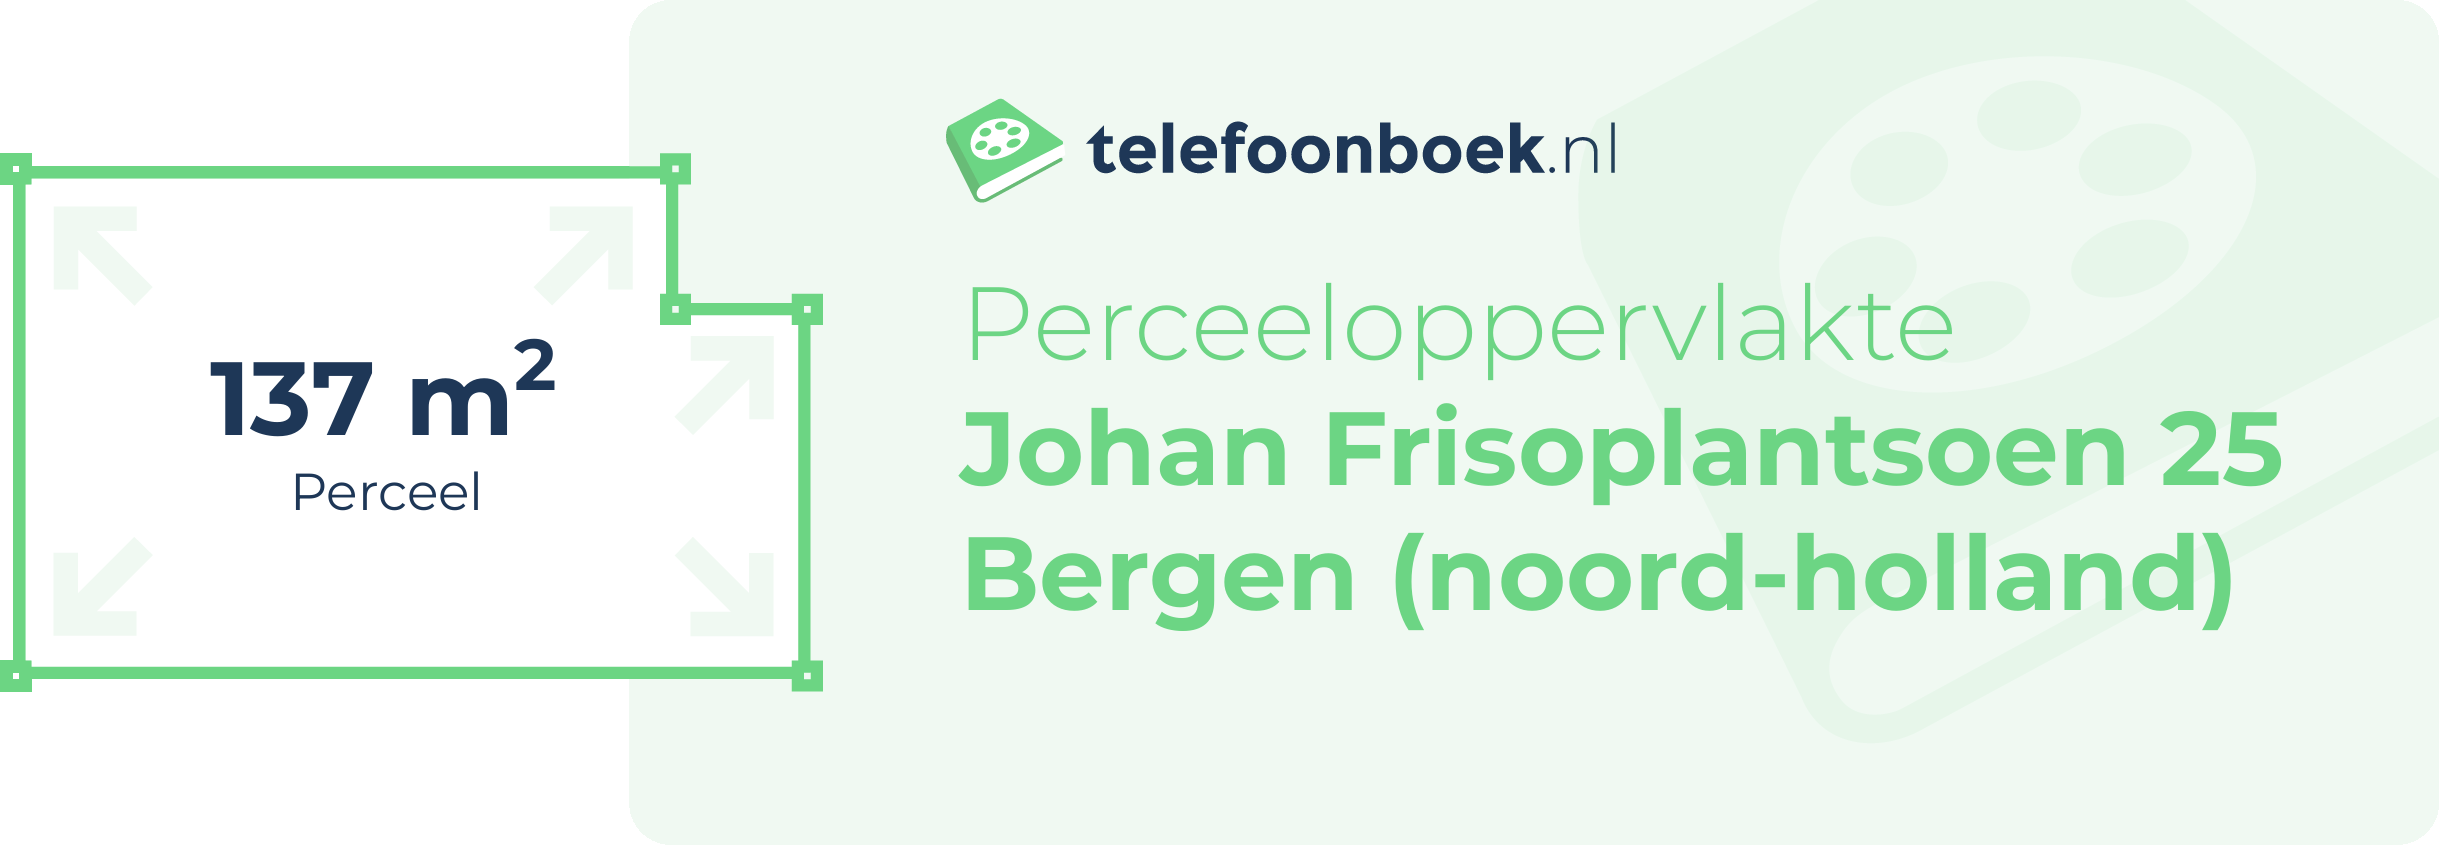 Perceeloppervlakte Johan Frisoplantsoen 25 Bergen (Noord-Holland)